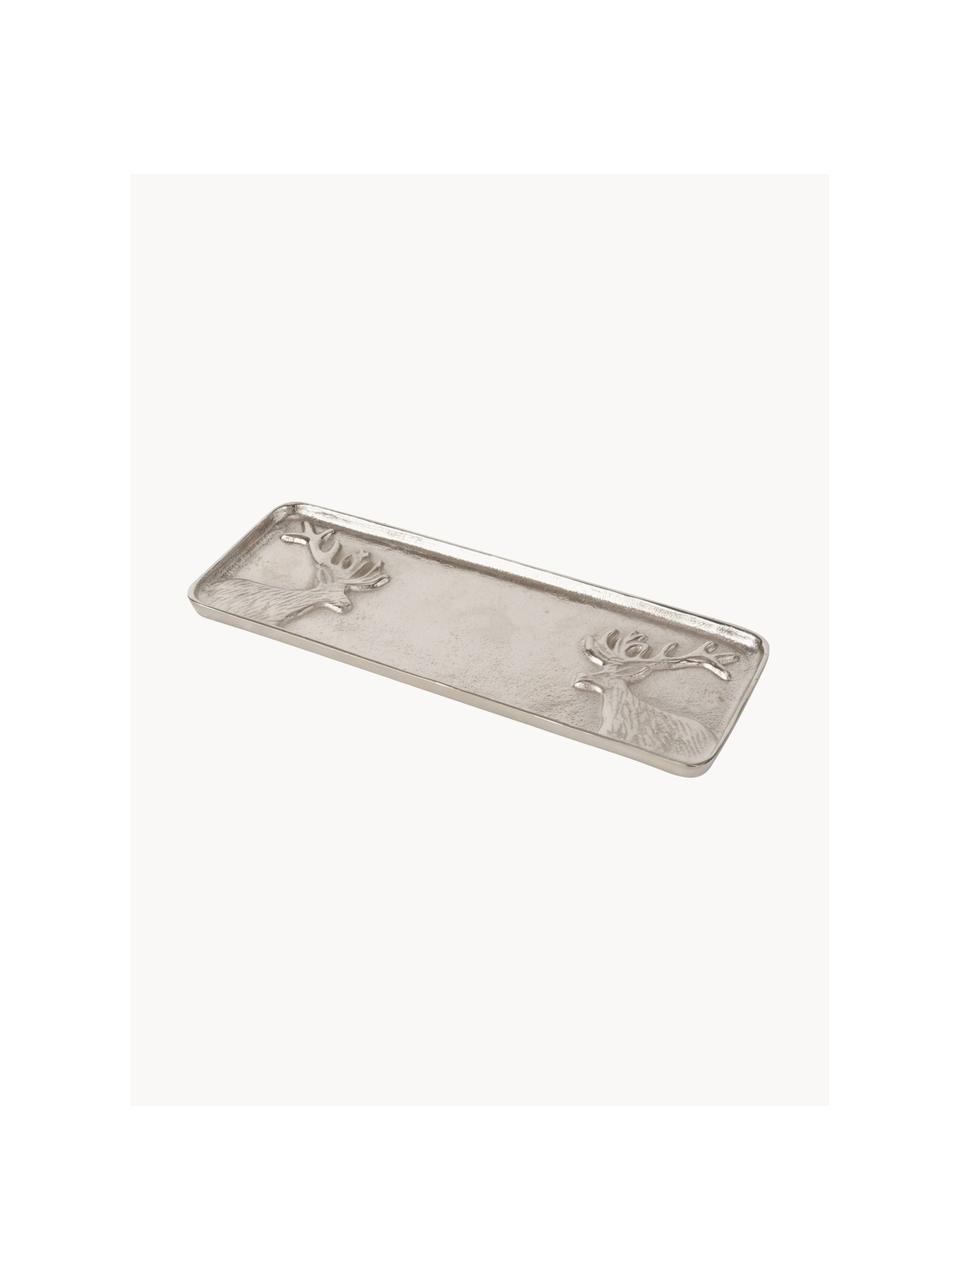 Taca dekoracyjna Egon, Metal powlekany, Odcienie srebrnego, D 37 x S 13 cm